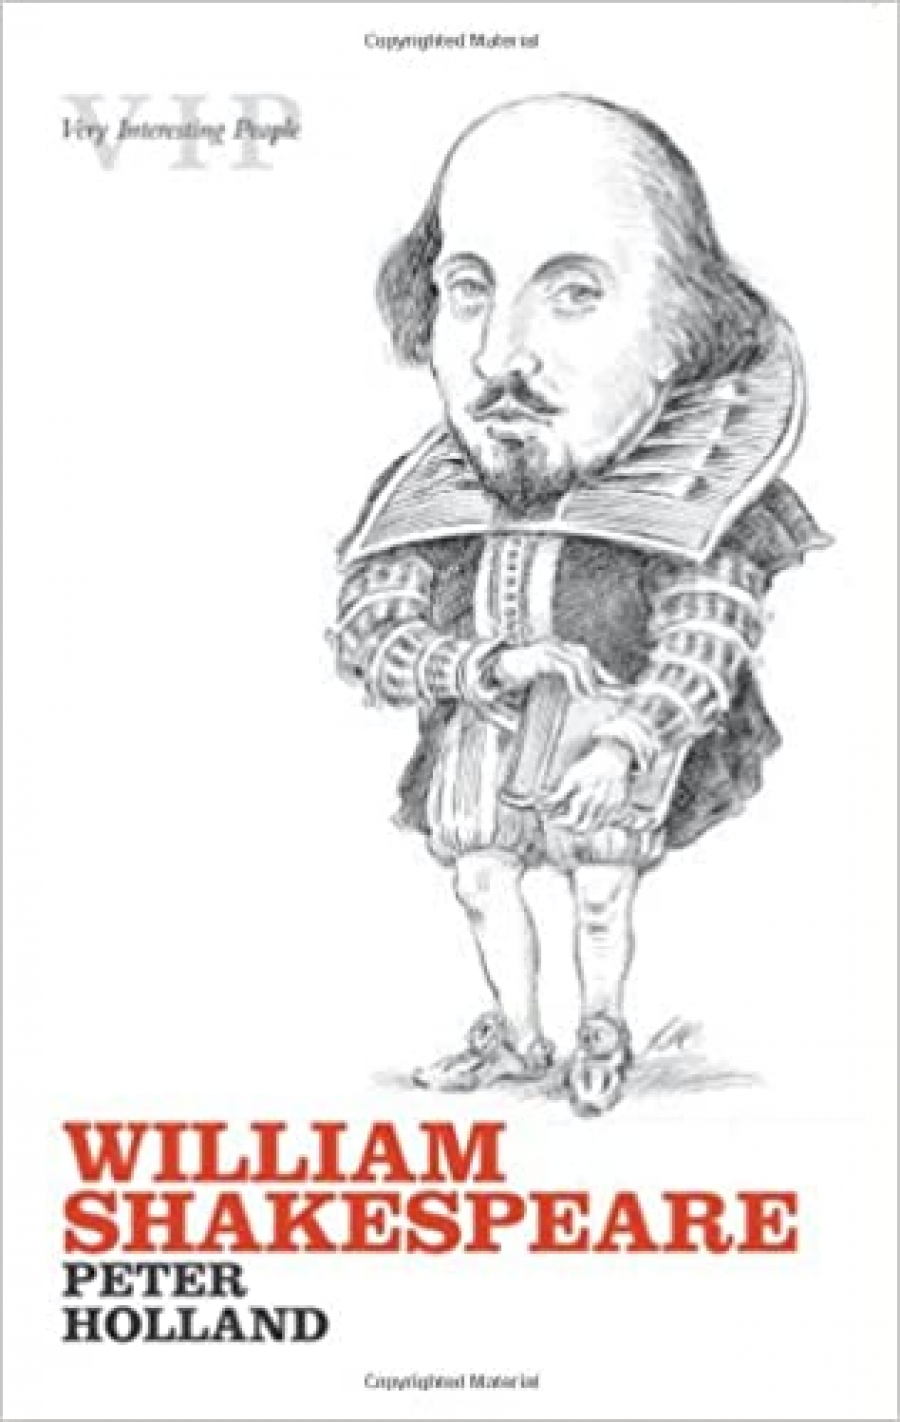 Vip william shakespeare 